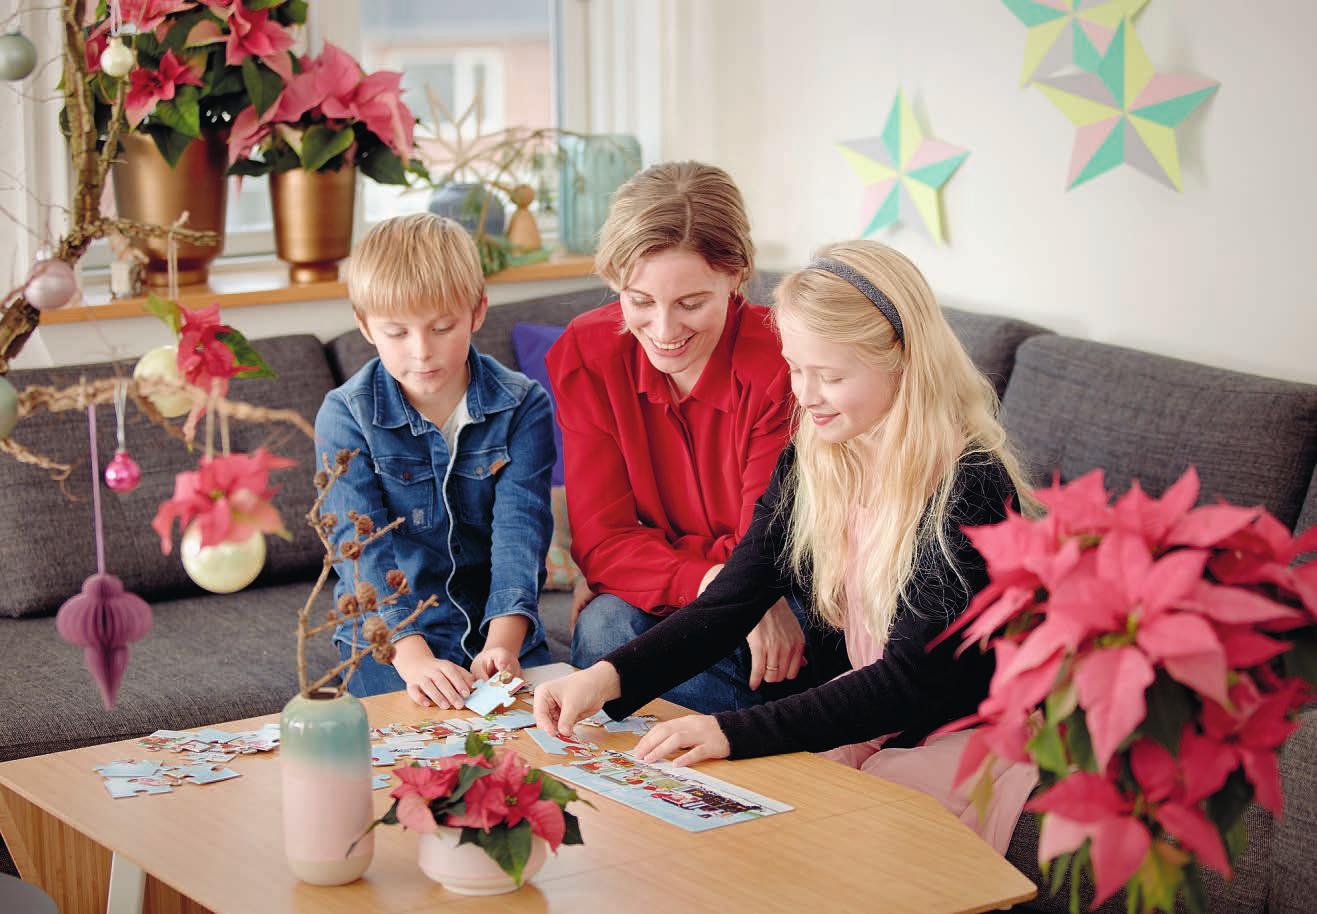 Wundervolle Weihnachtszeit: Zu Weihnachten gehören gemeinsame Lese- und Spielstunden ebenso wie stimmungsvoller Raumschmuck. Für ein regelrechtes Feuerwerk der Farben sorgen prachtvolle Weihnachtssterne Foto: Stars for Europe